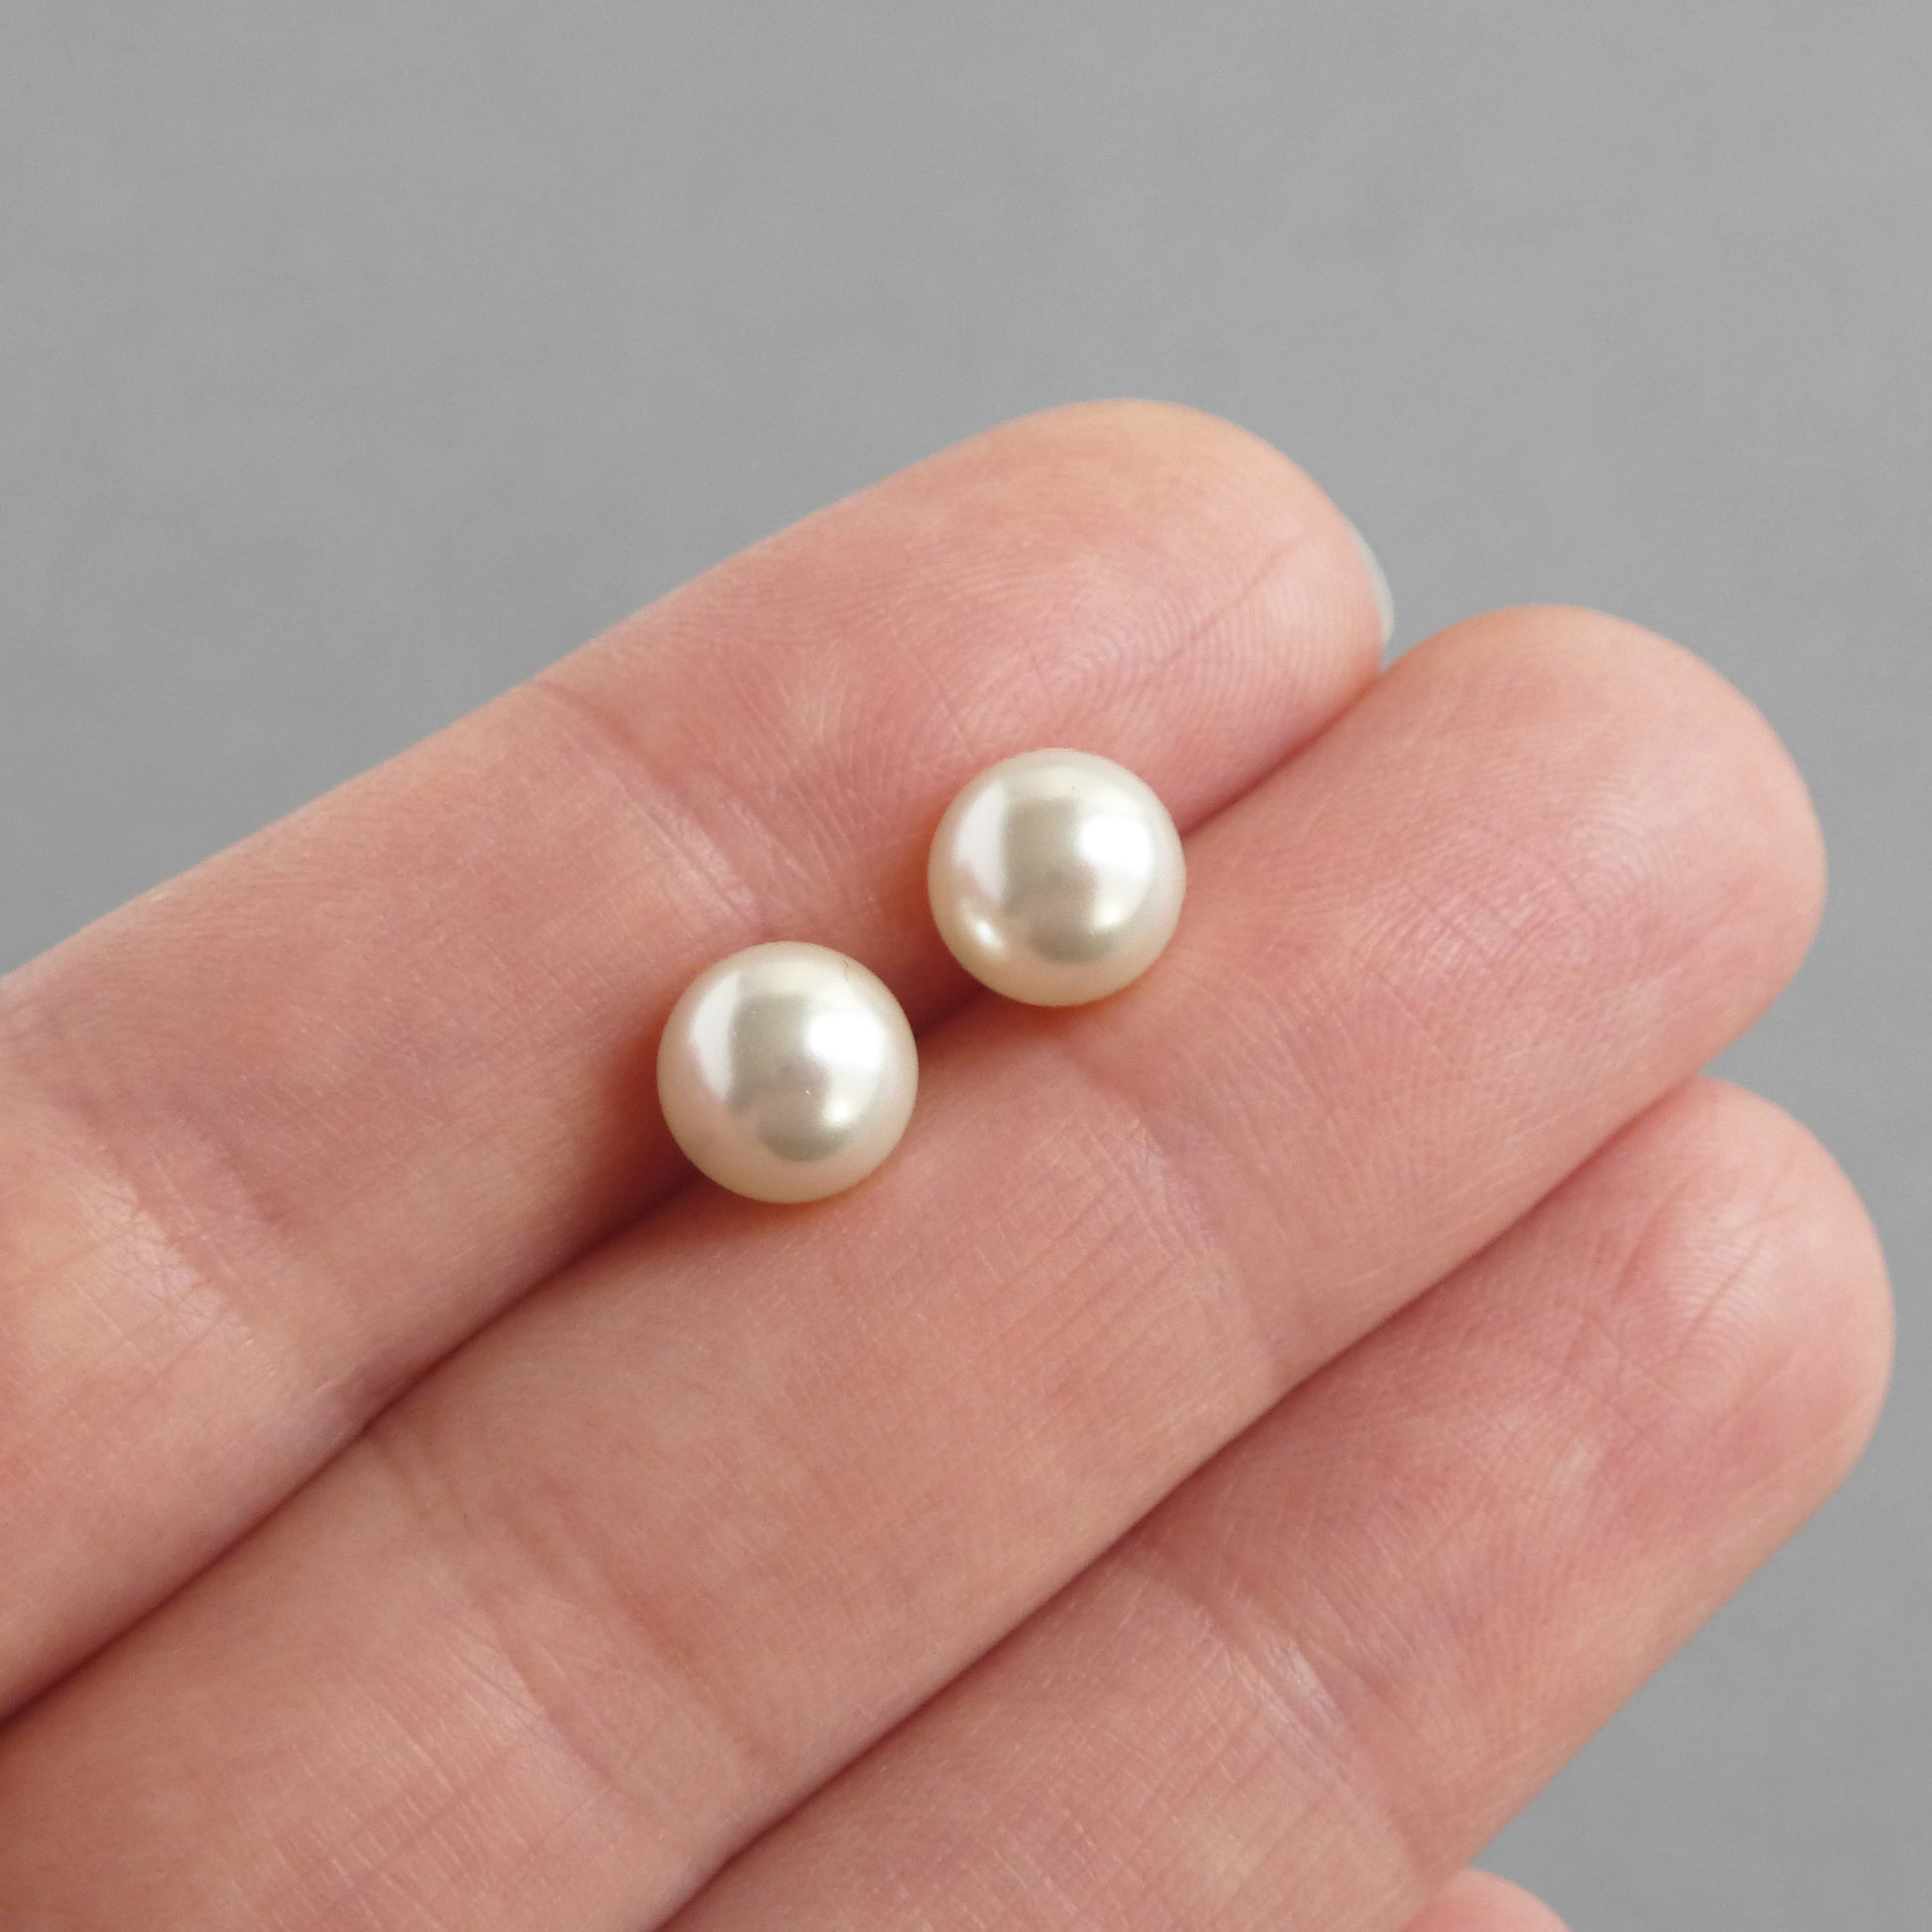 8mm cream pearl stud earrings